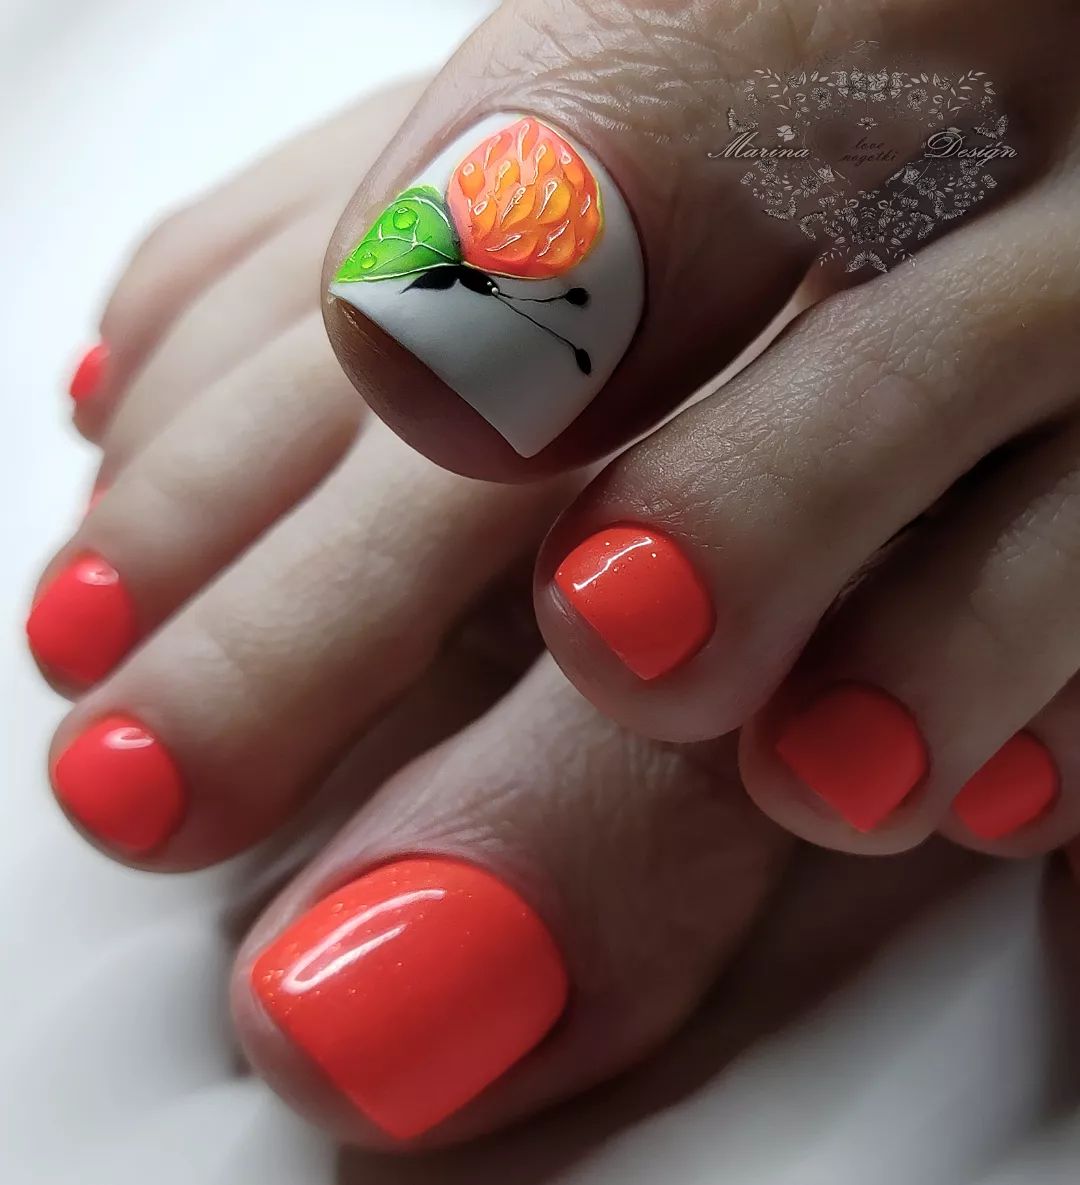 Orange Toe Nails with Fruit Design on Big Toe